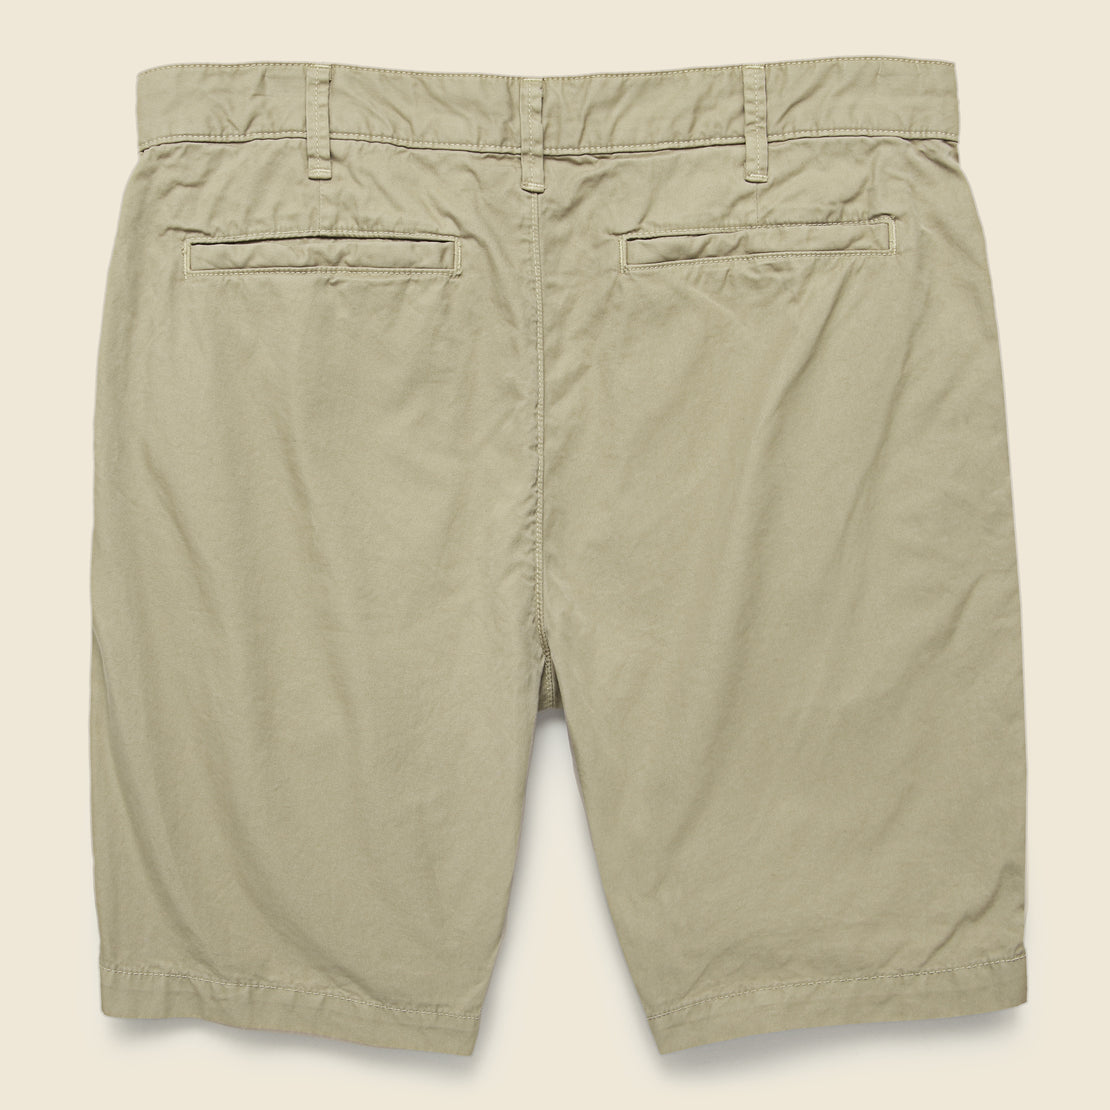 8-inch Twill Bermuda Short - Khaki